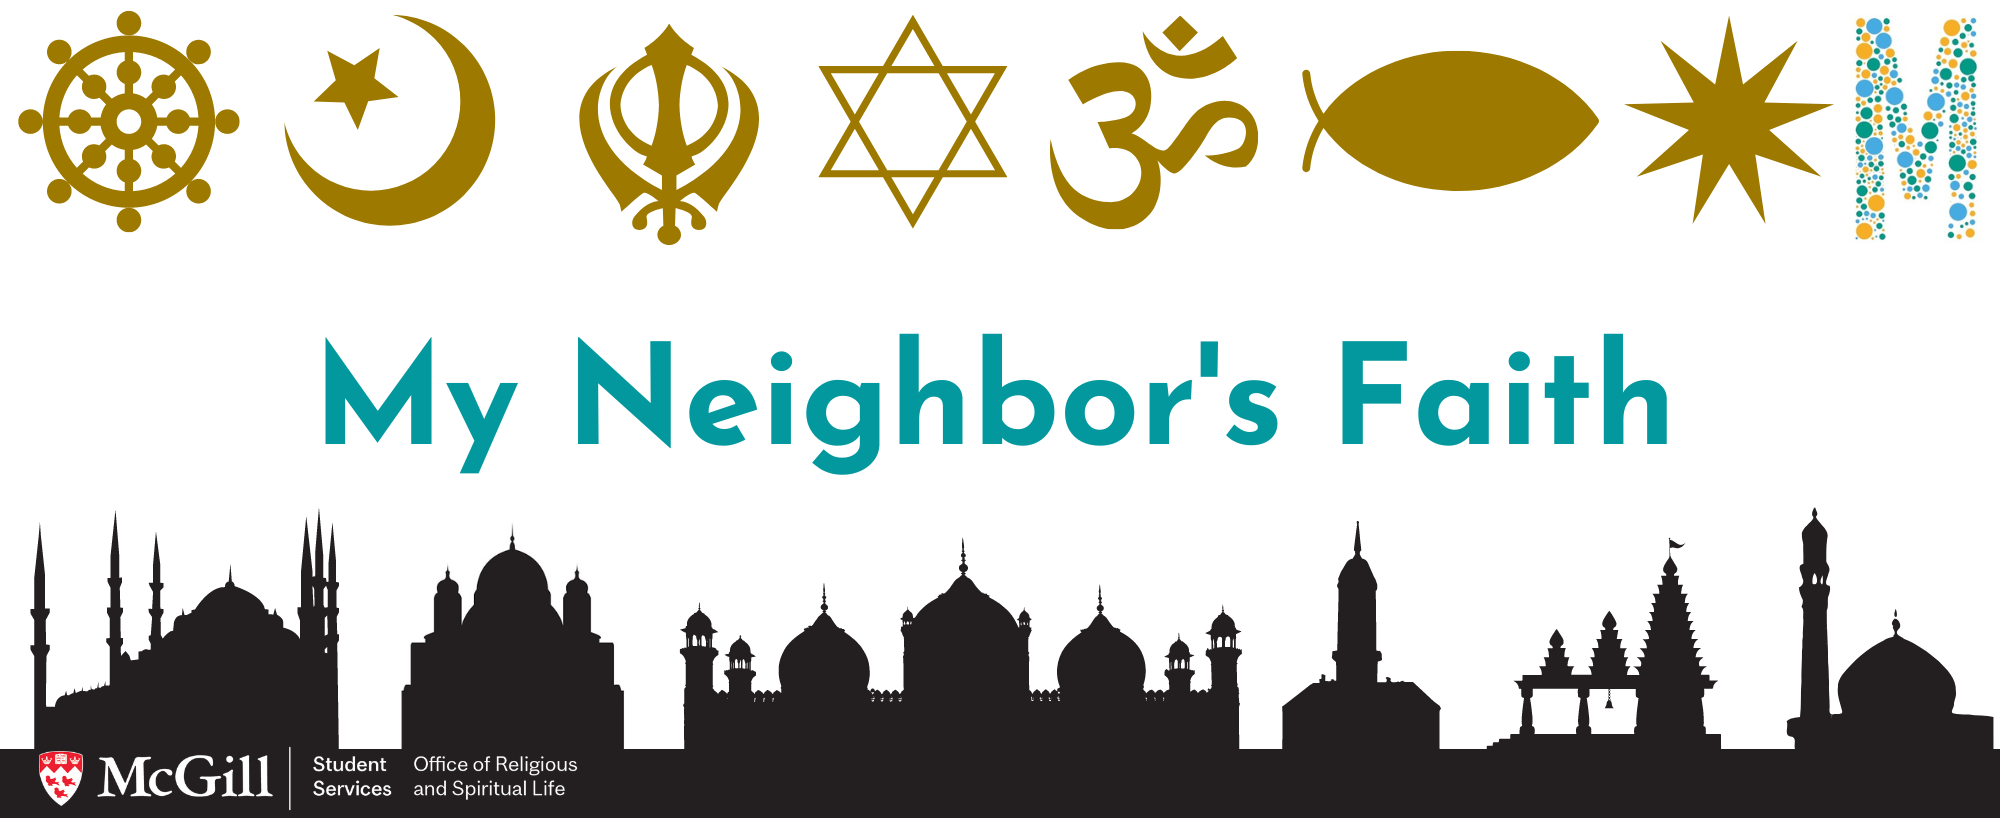 My Neighbor's Faith logo